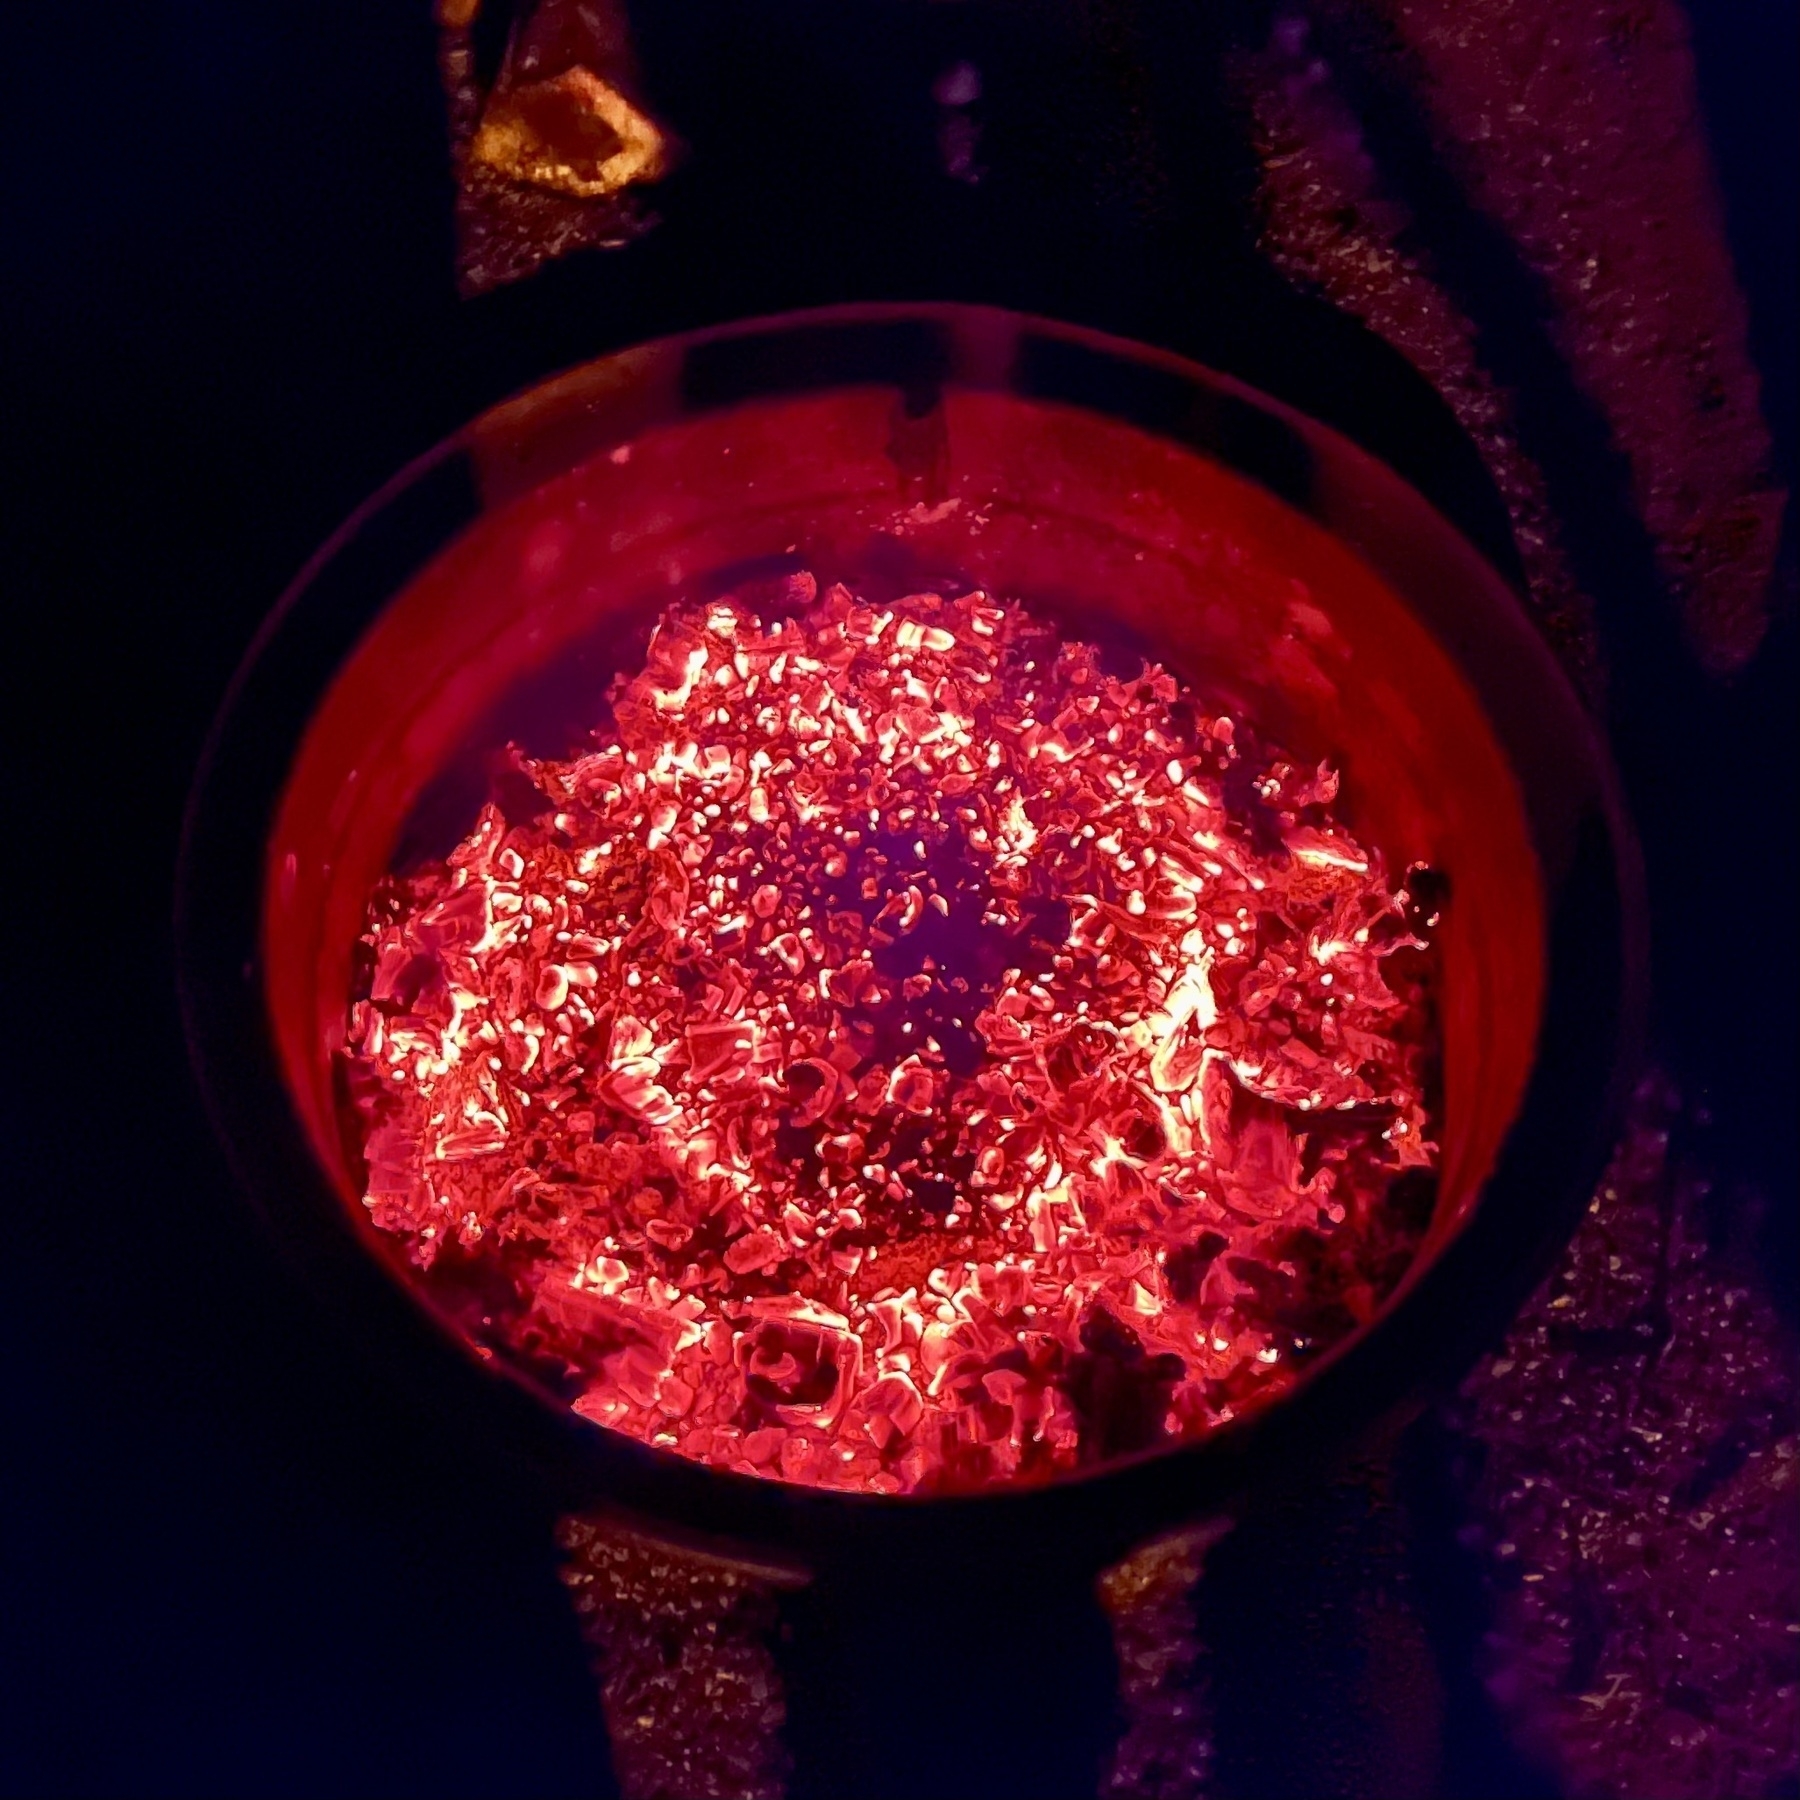 Red hot coals in a fire pit